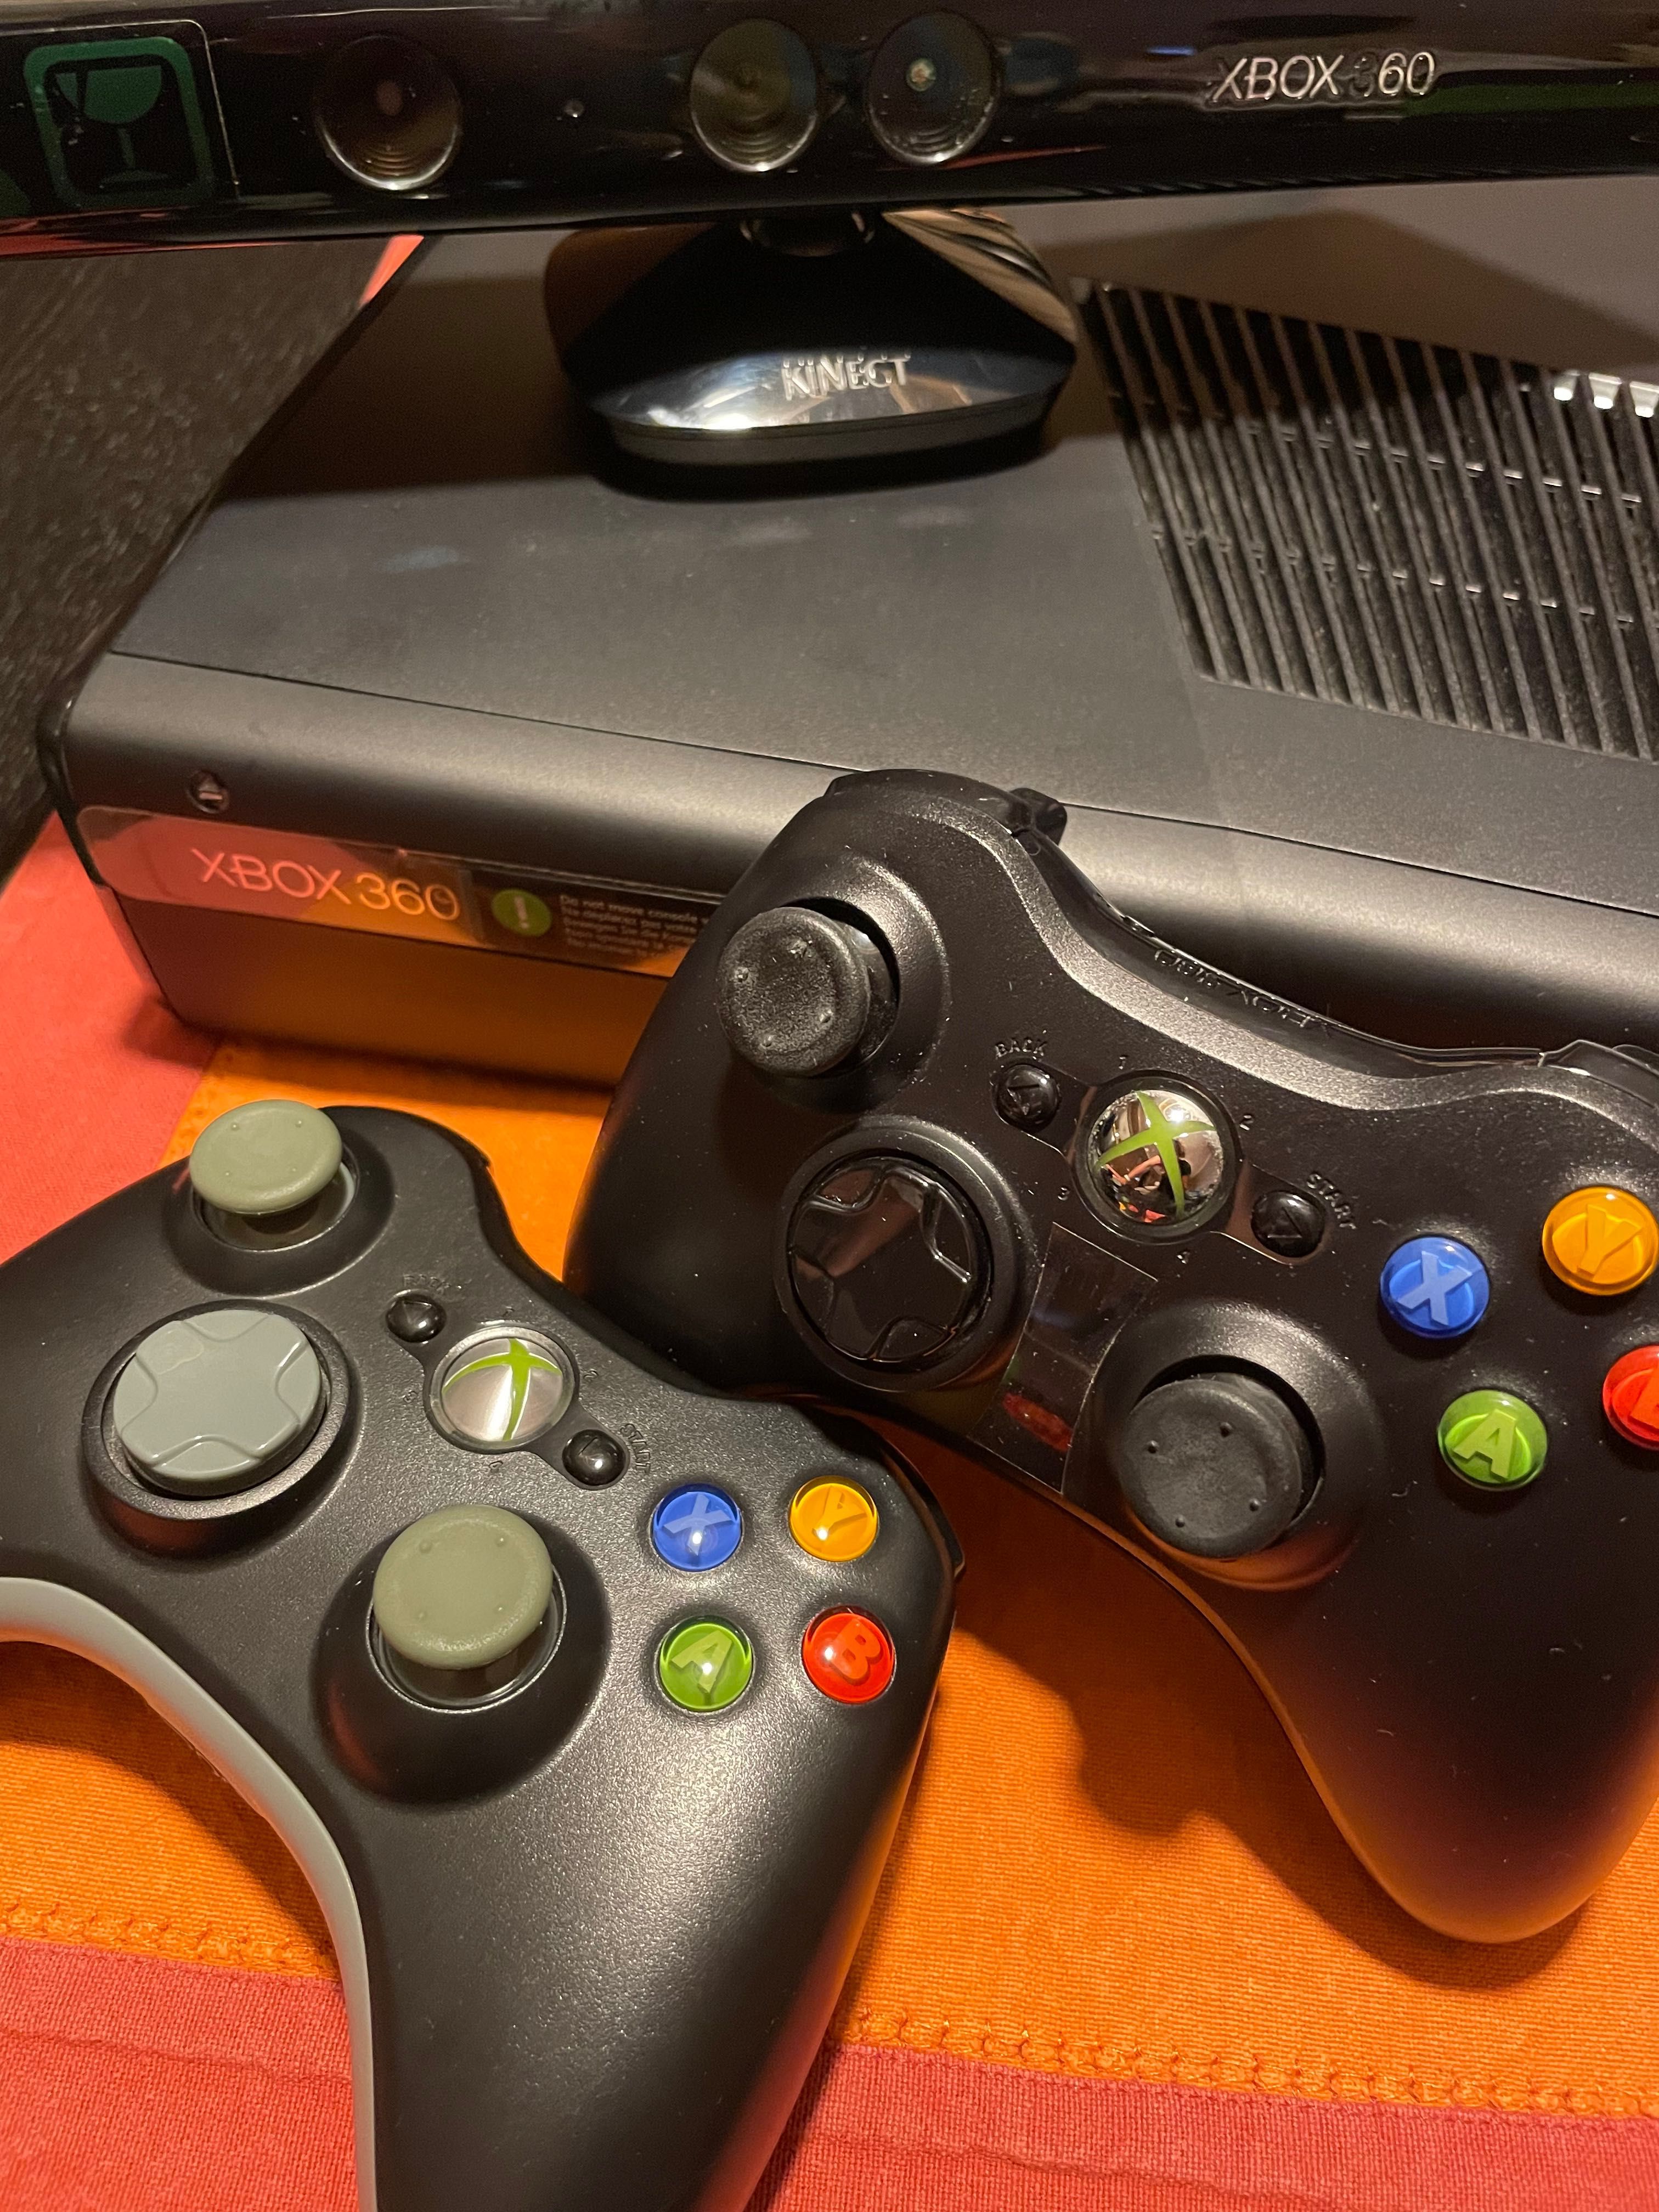 Como novo: Conjunto Kinect Xbox 360 (consola, sistema kinect, jogos)